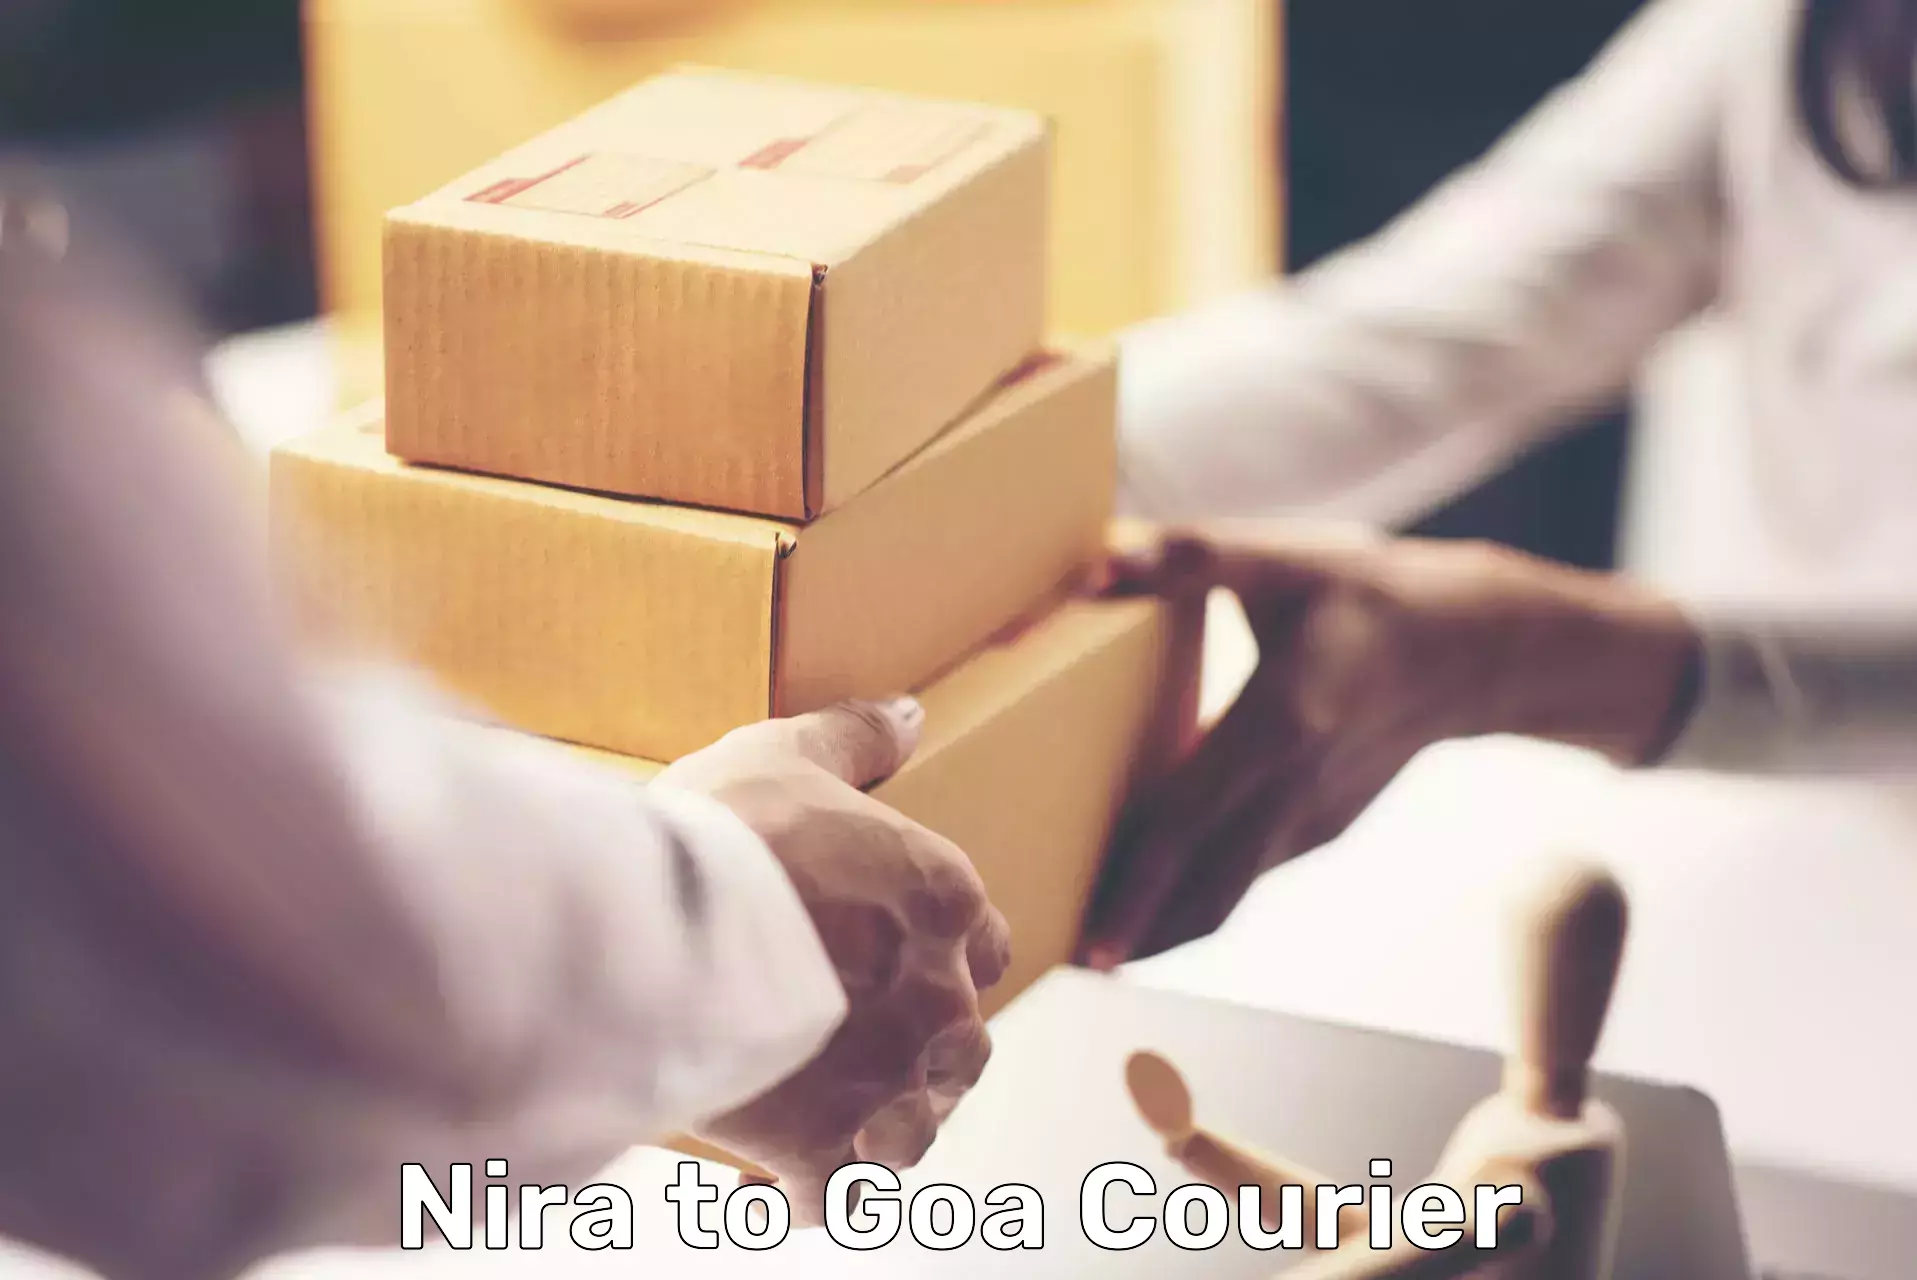 Secure freight services Nira to Goa University